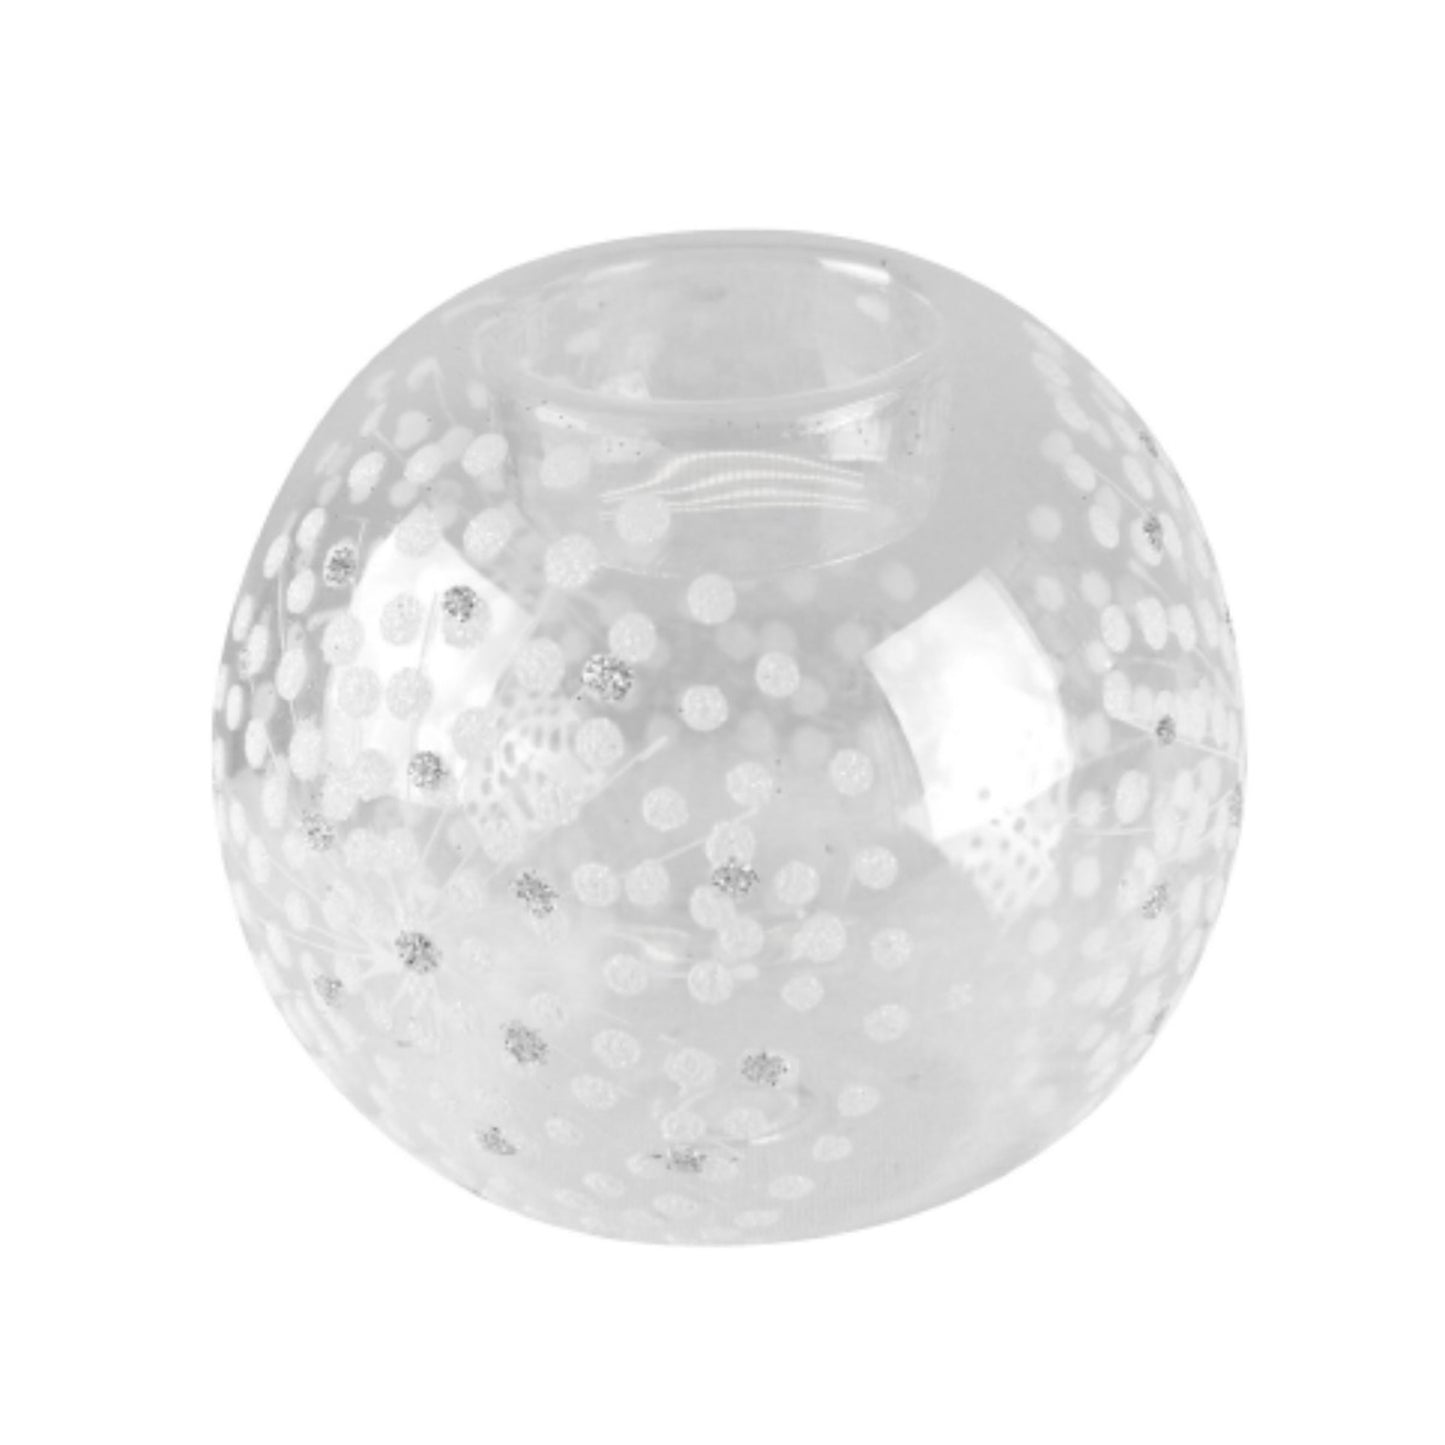 Starburst Glass Tea Light Ball